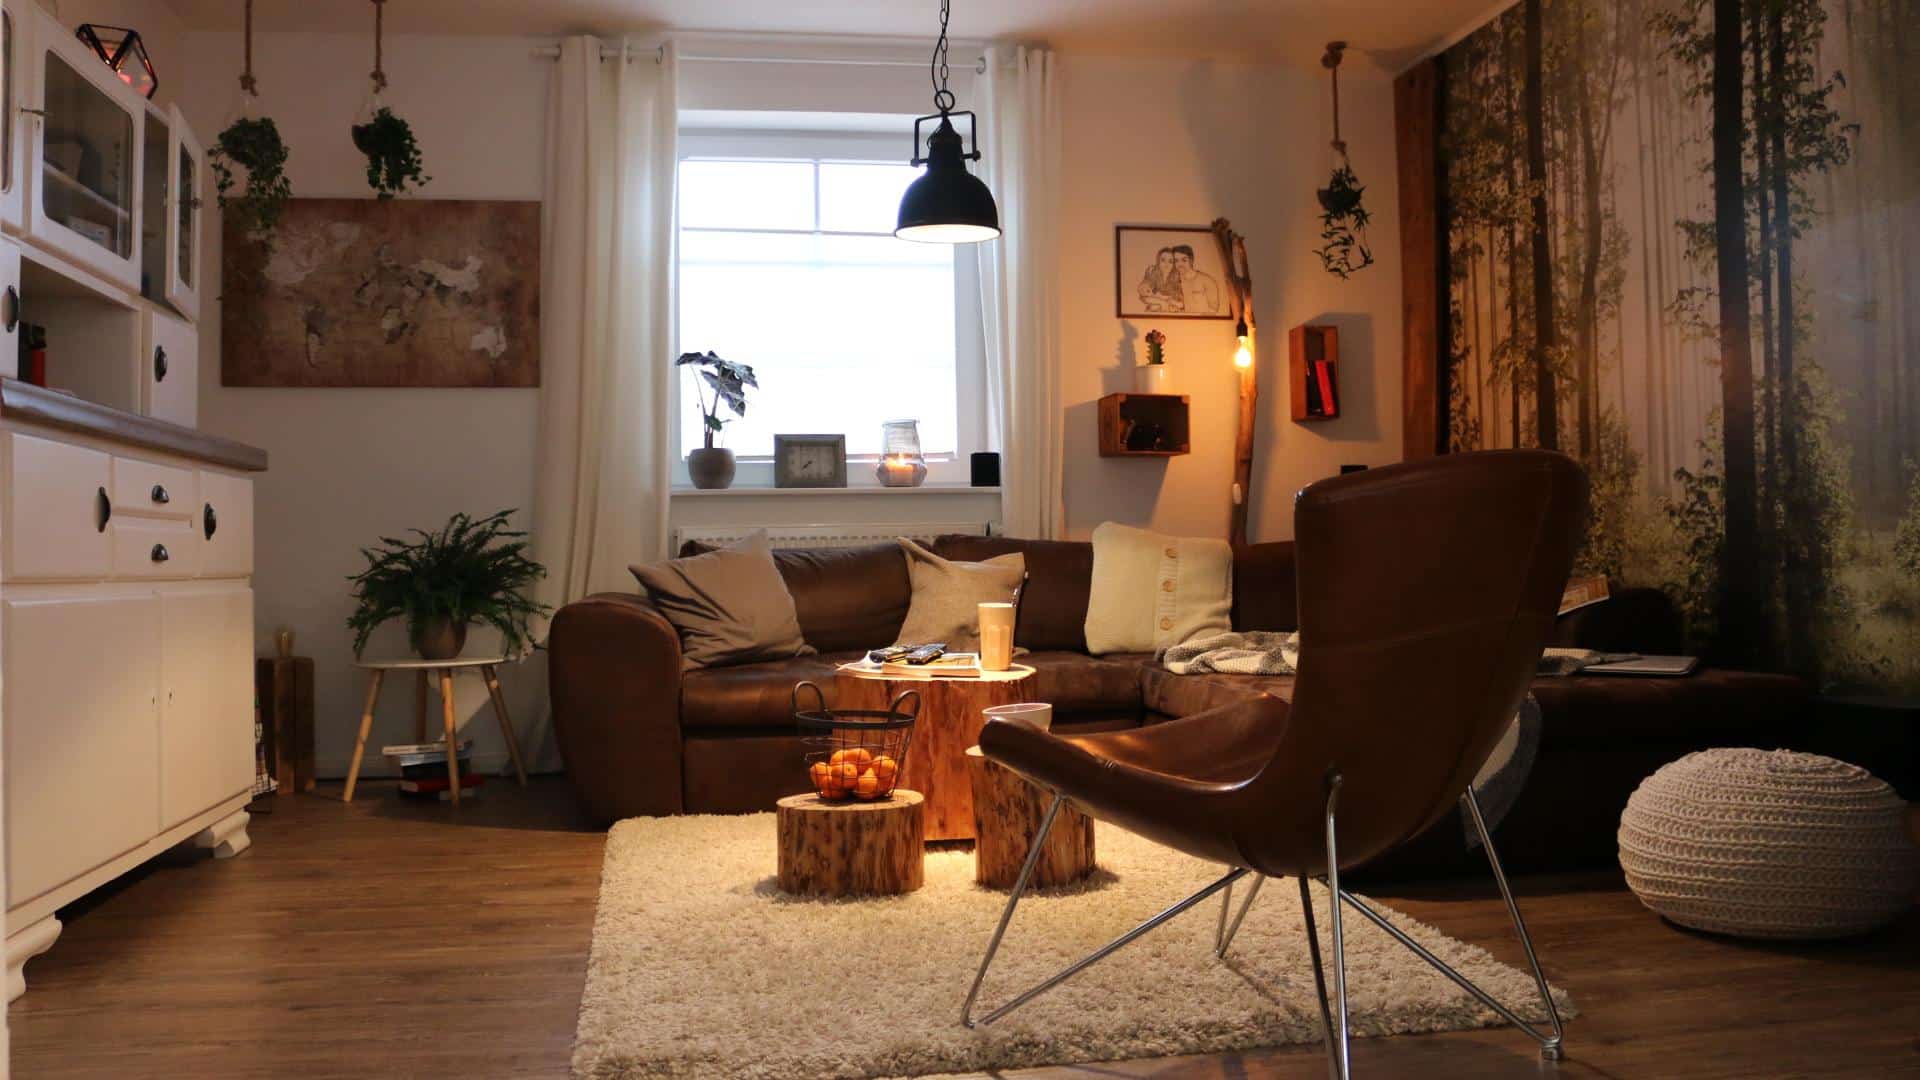 ᐅ Wohnzimmer einrichten & gestalten - Room Makeover DIY ...